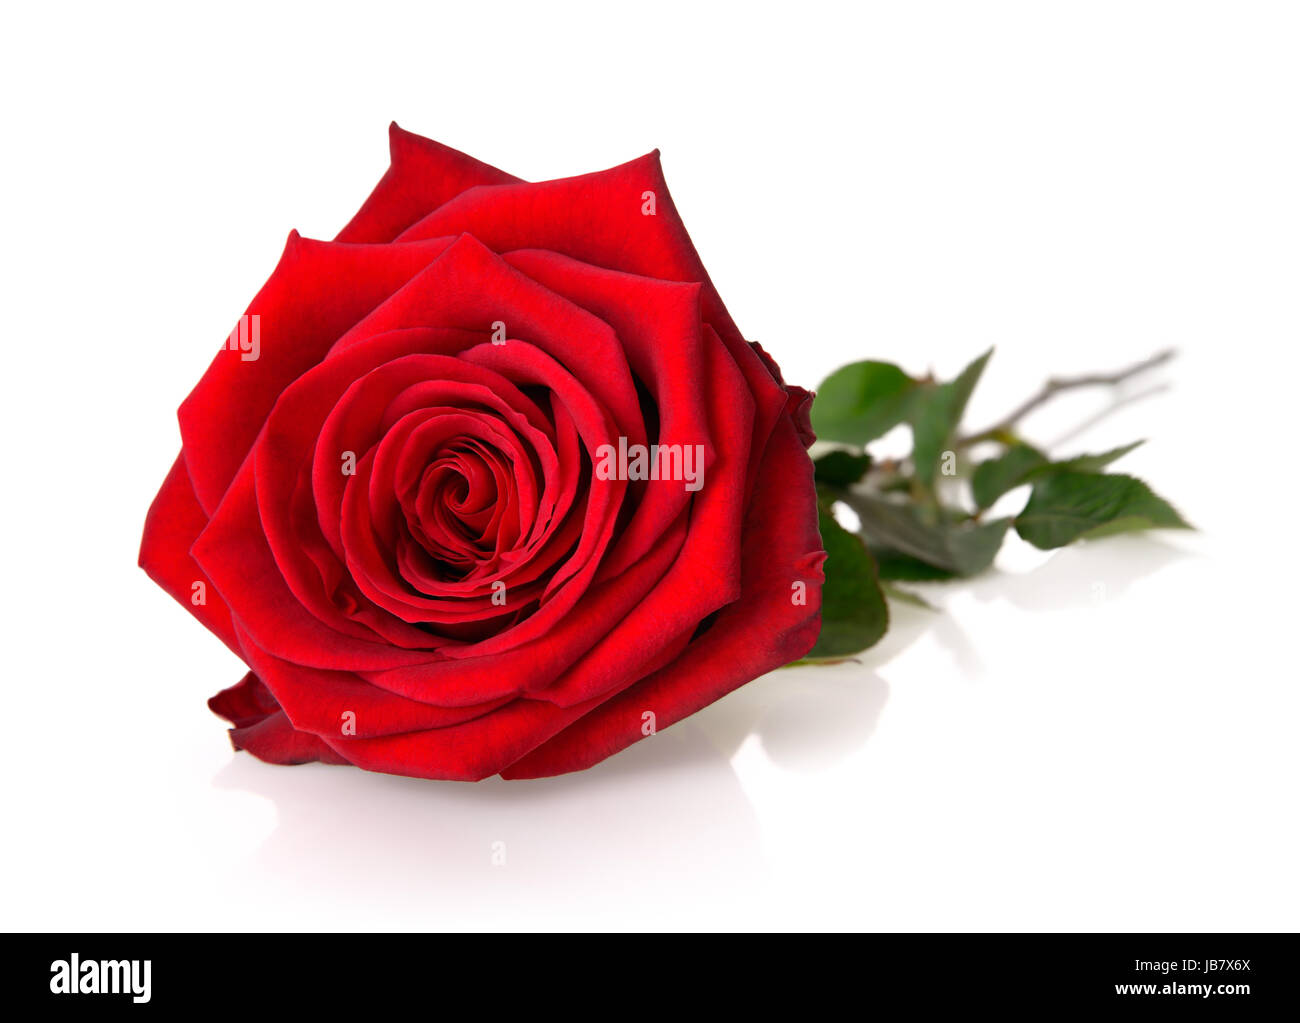 Eine voll aufgeblühte rote Rose mit Stängel und Blättern auf weißem Hintergrund Stock Photo